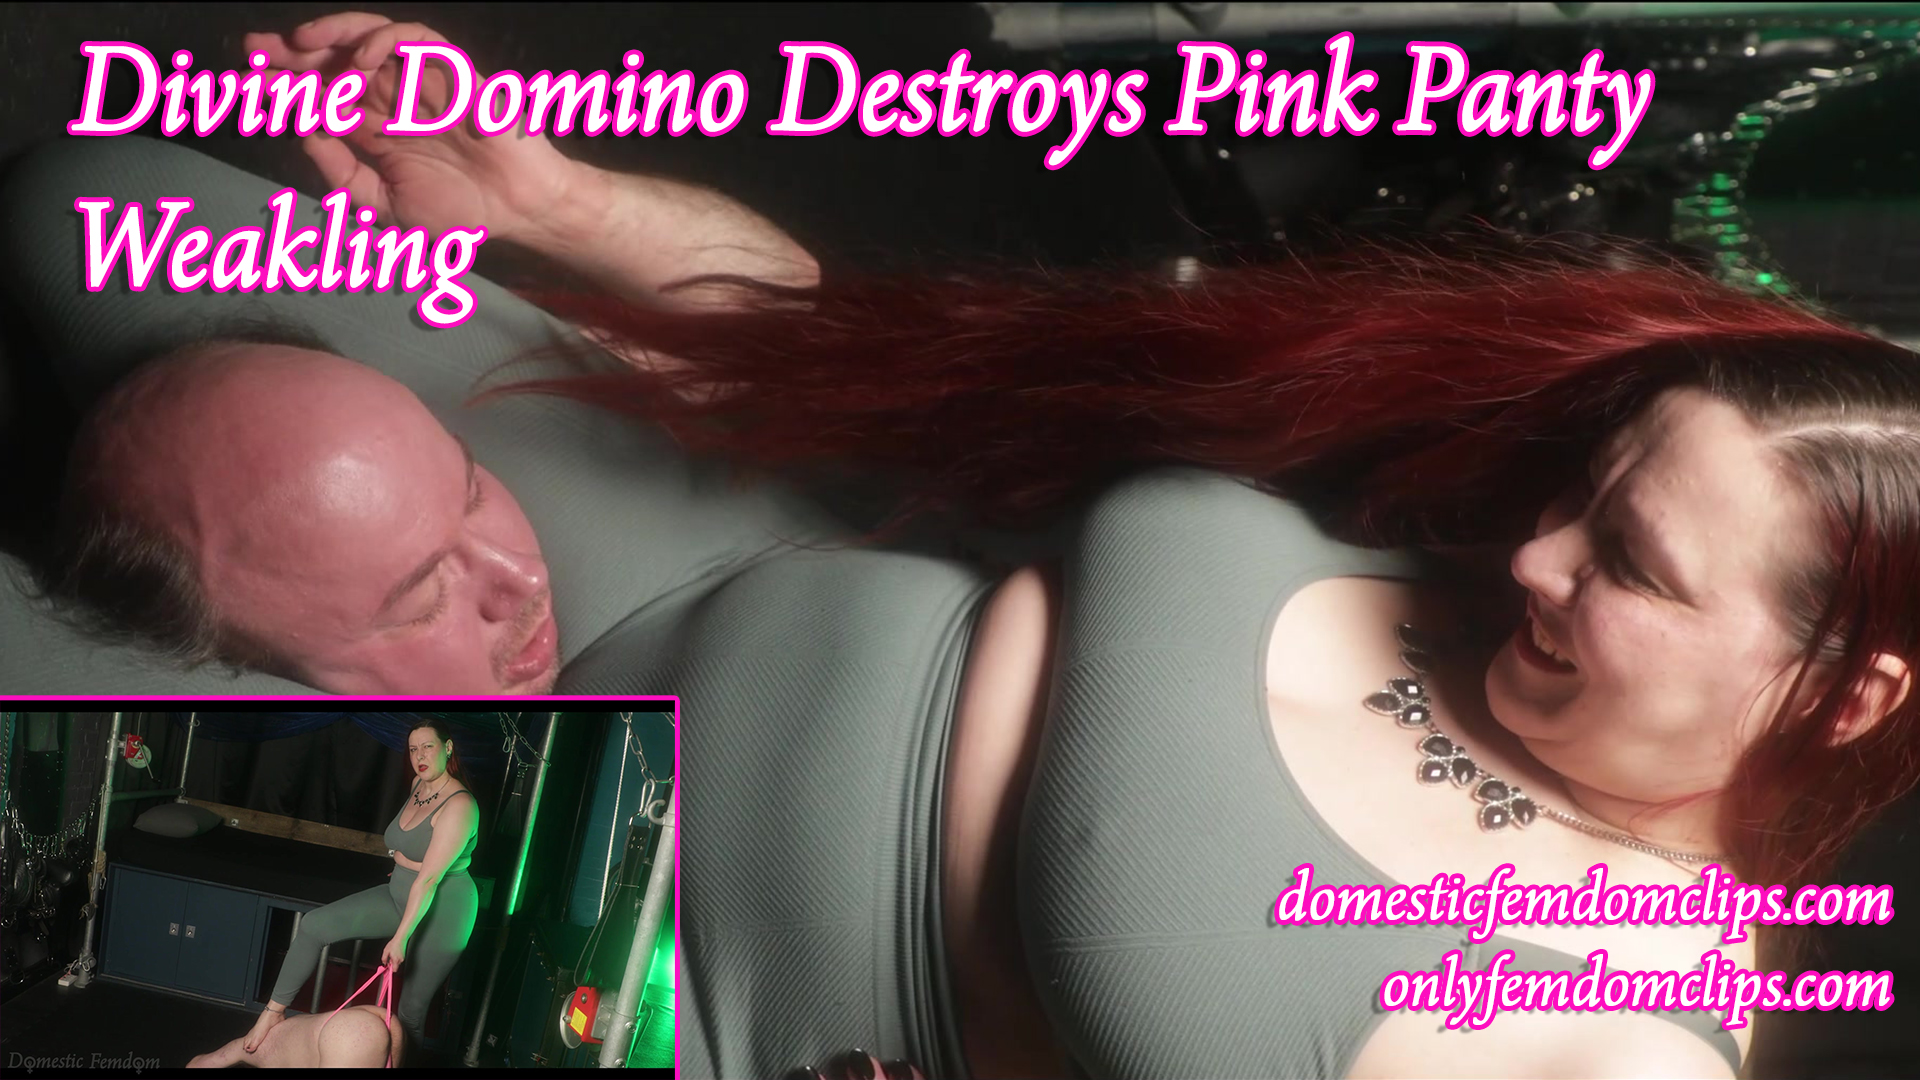 pink panty weakling title slide - Divine Domino destroys Pink Panty Weakling